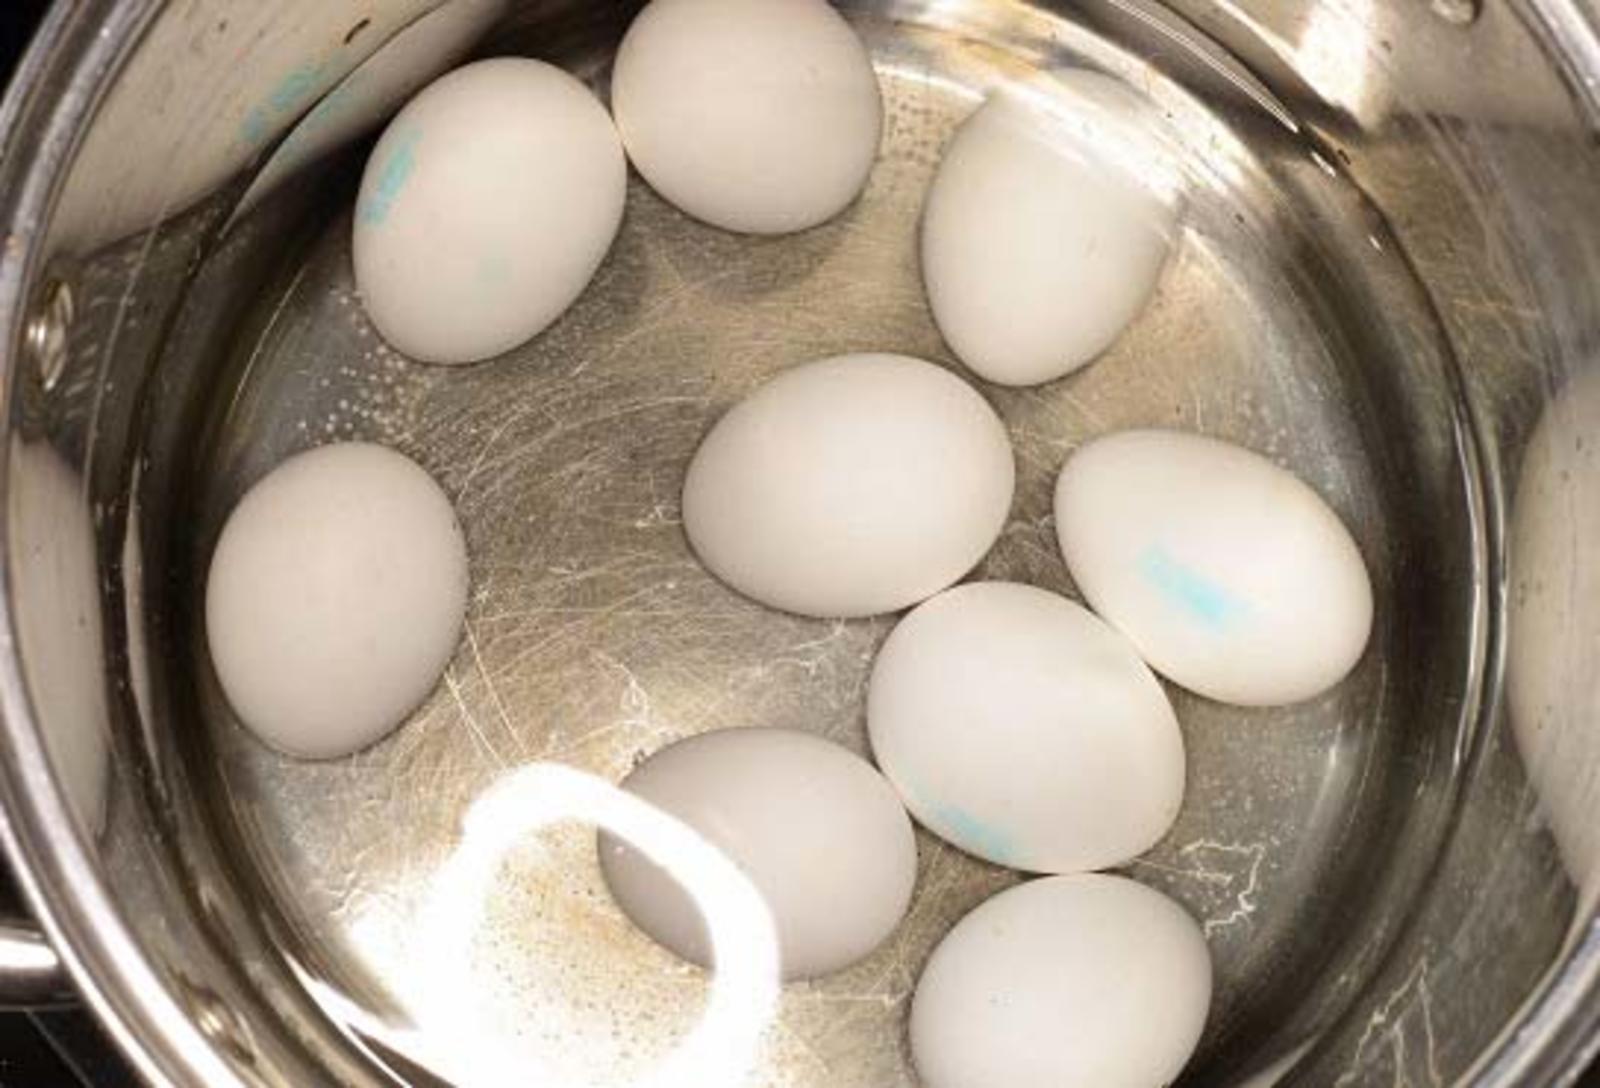 Зачем солить воду при варке яиц: Зачем солить воду при варке яиц?